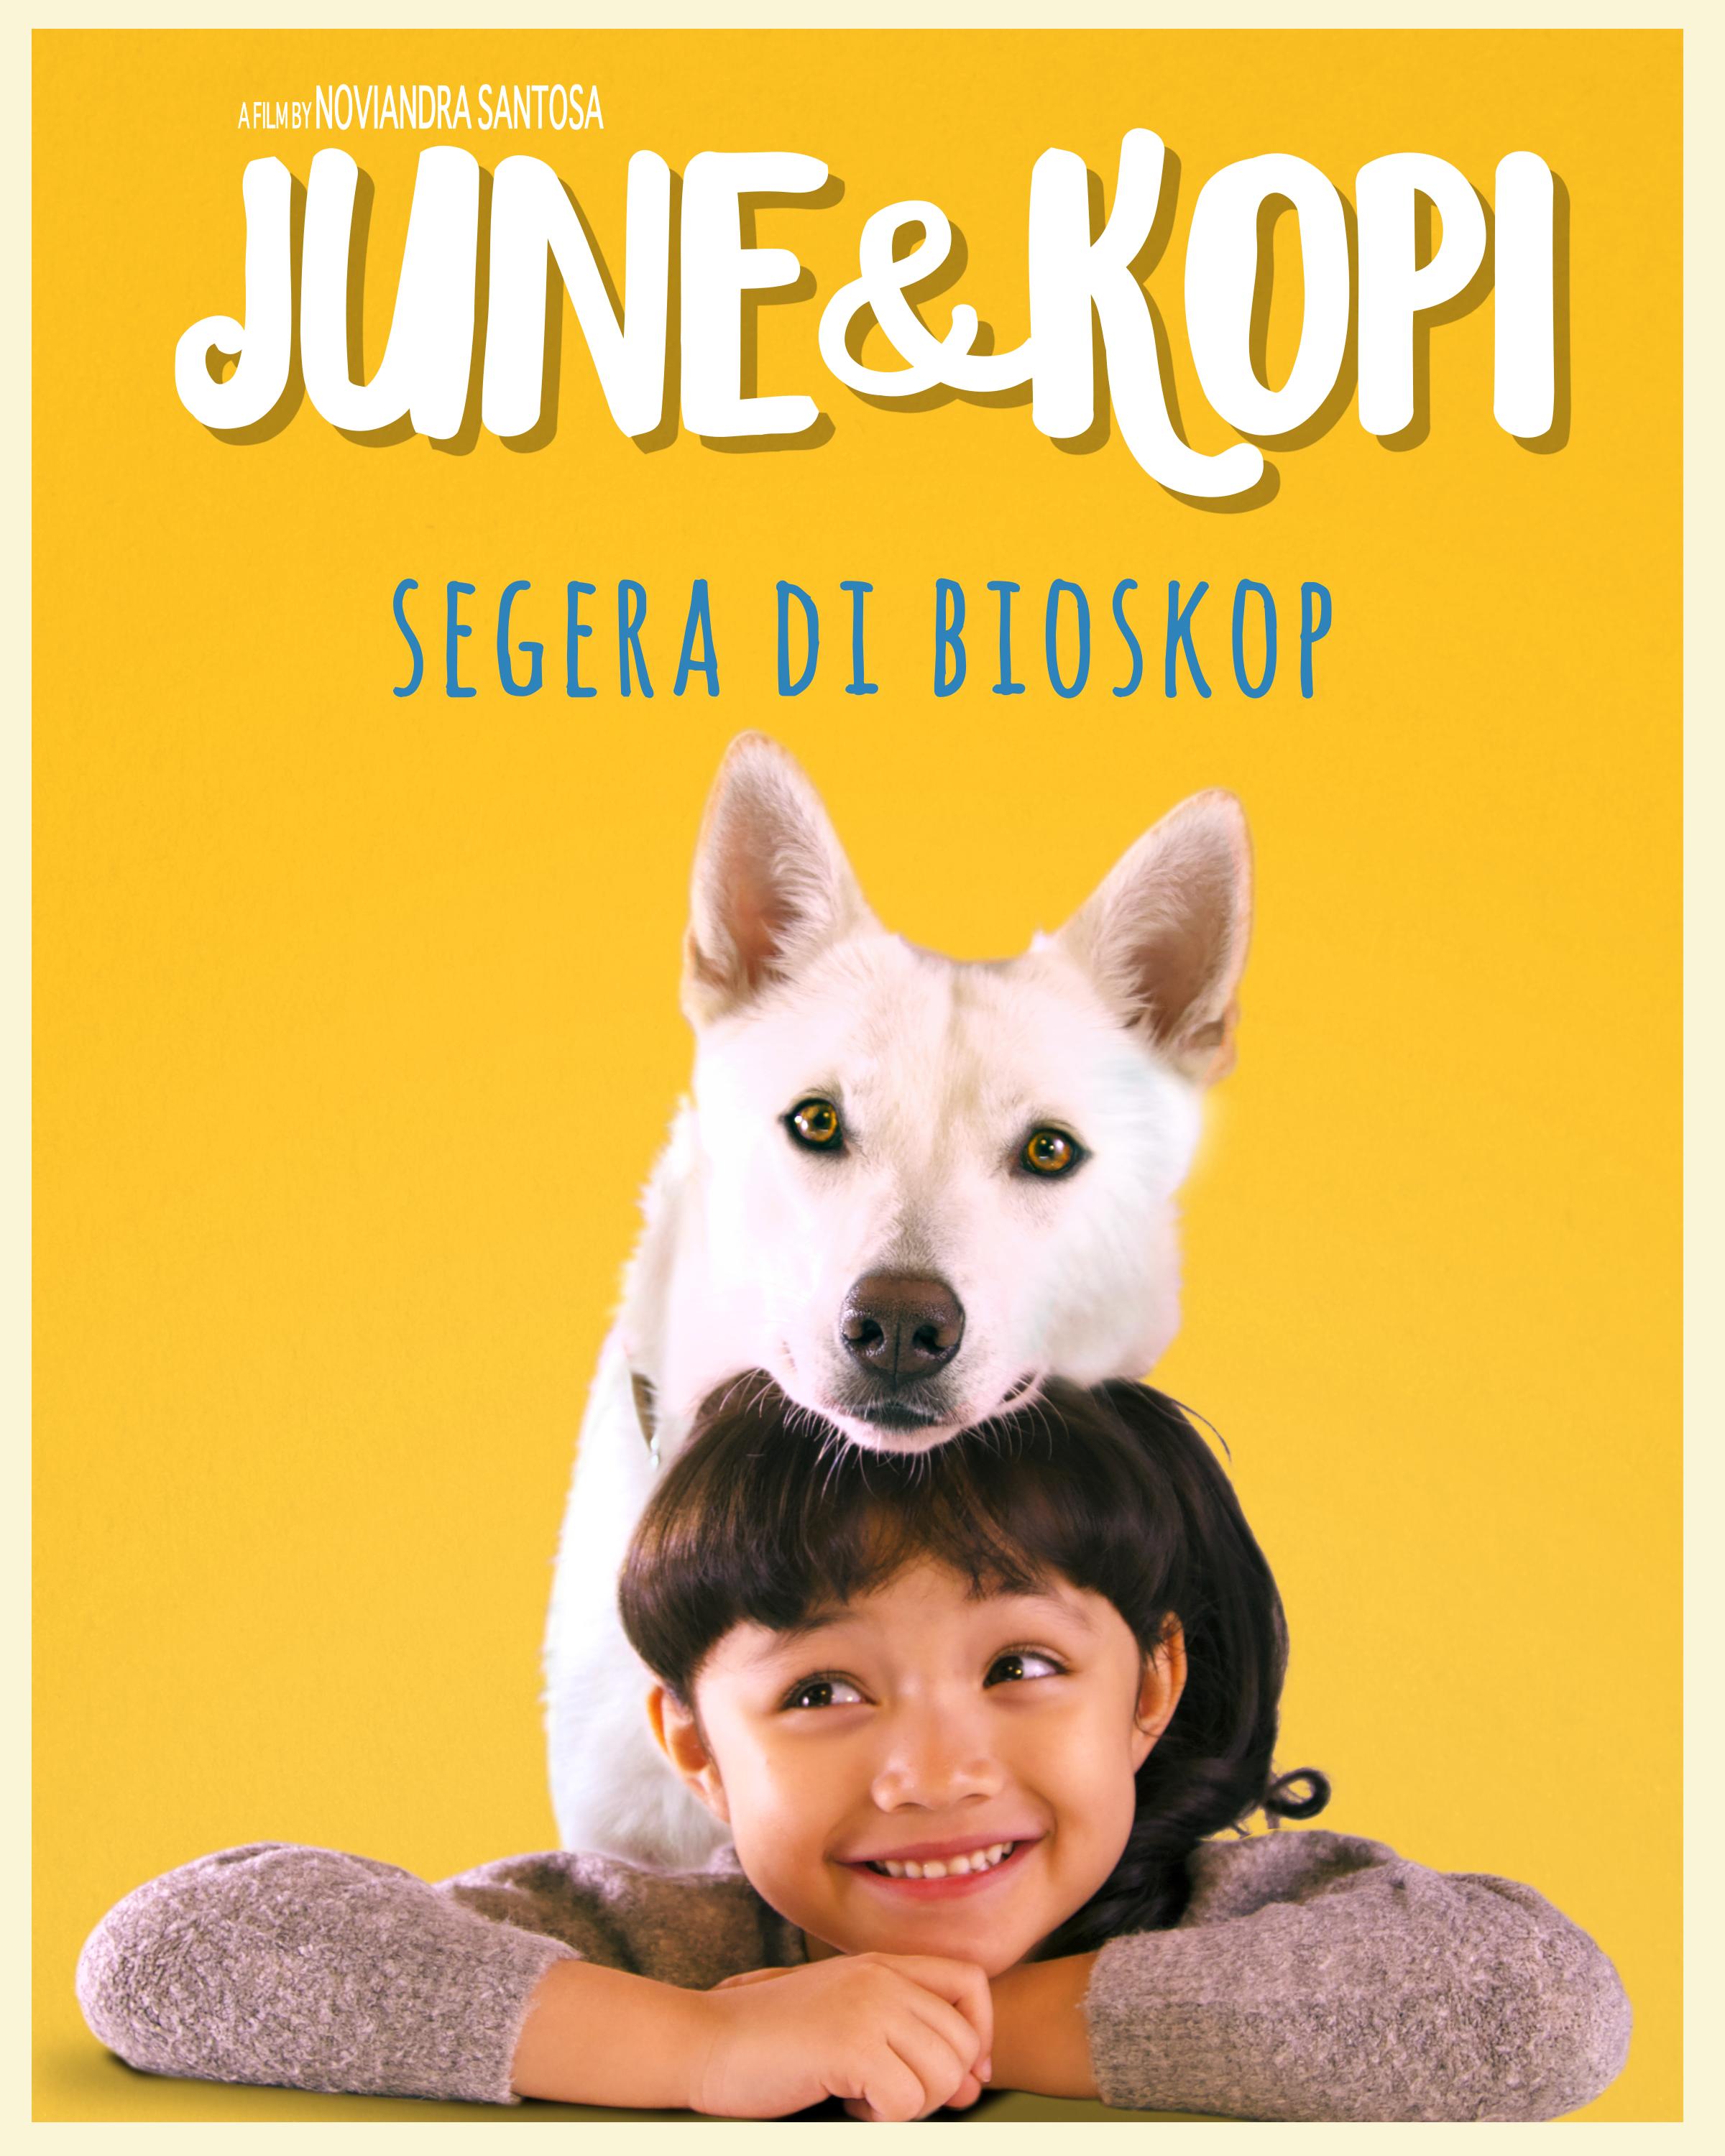 June und Kopi